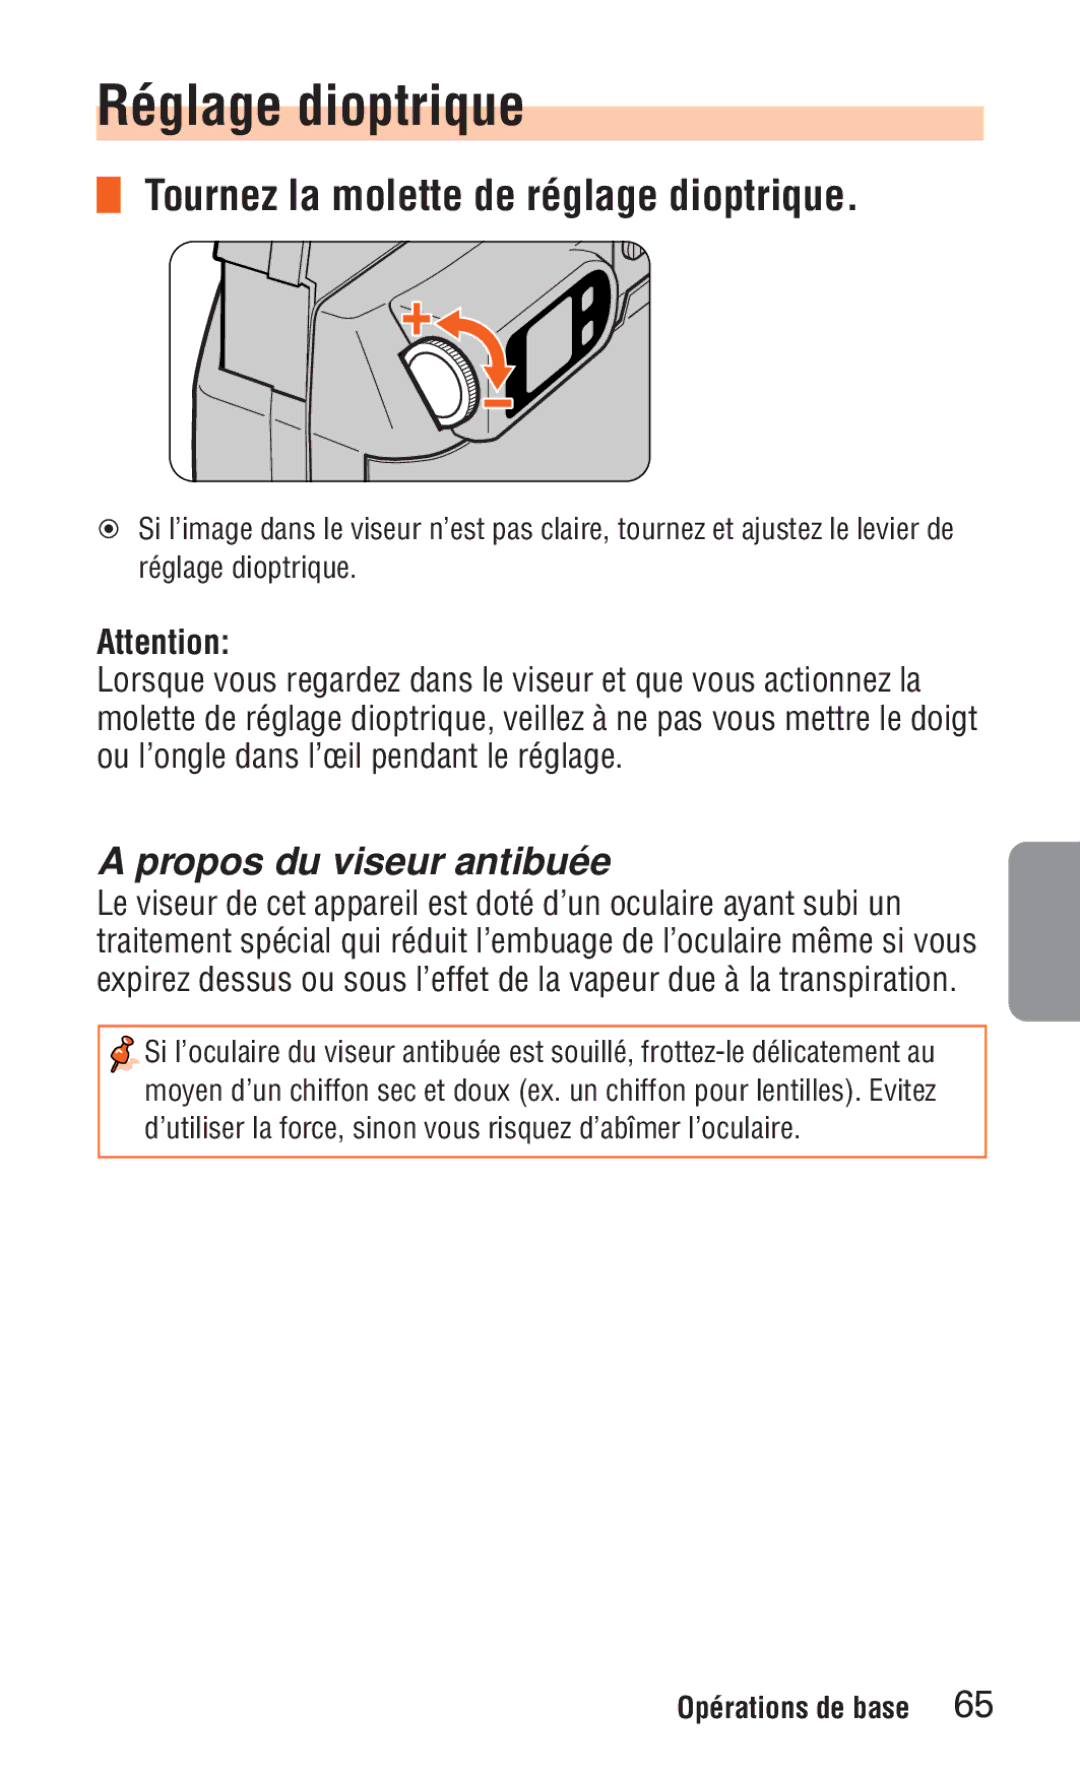 Nikon ED 120 instruction manual Réglage dioptrique, Tournez la molette de réglage dioptrique, Propos du viseur antibuée 